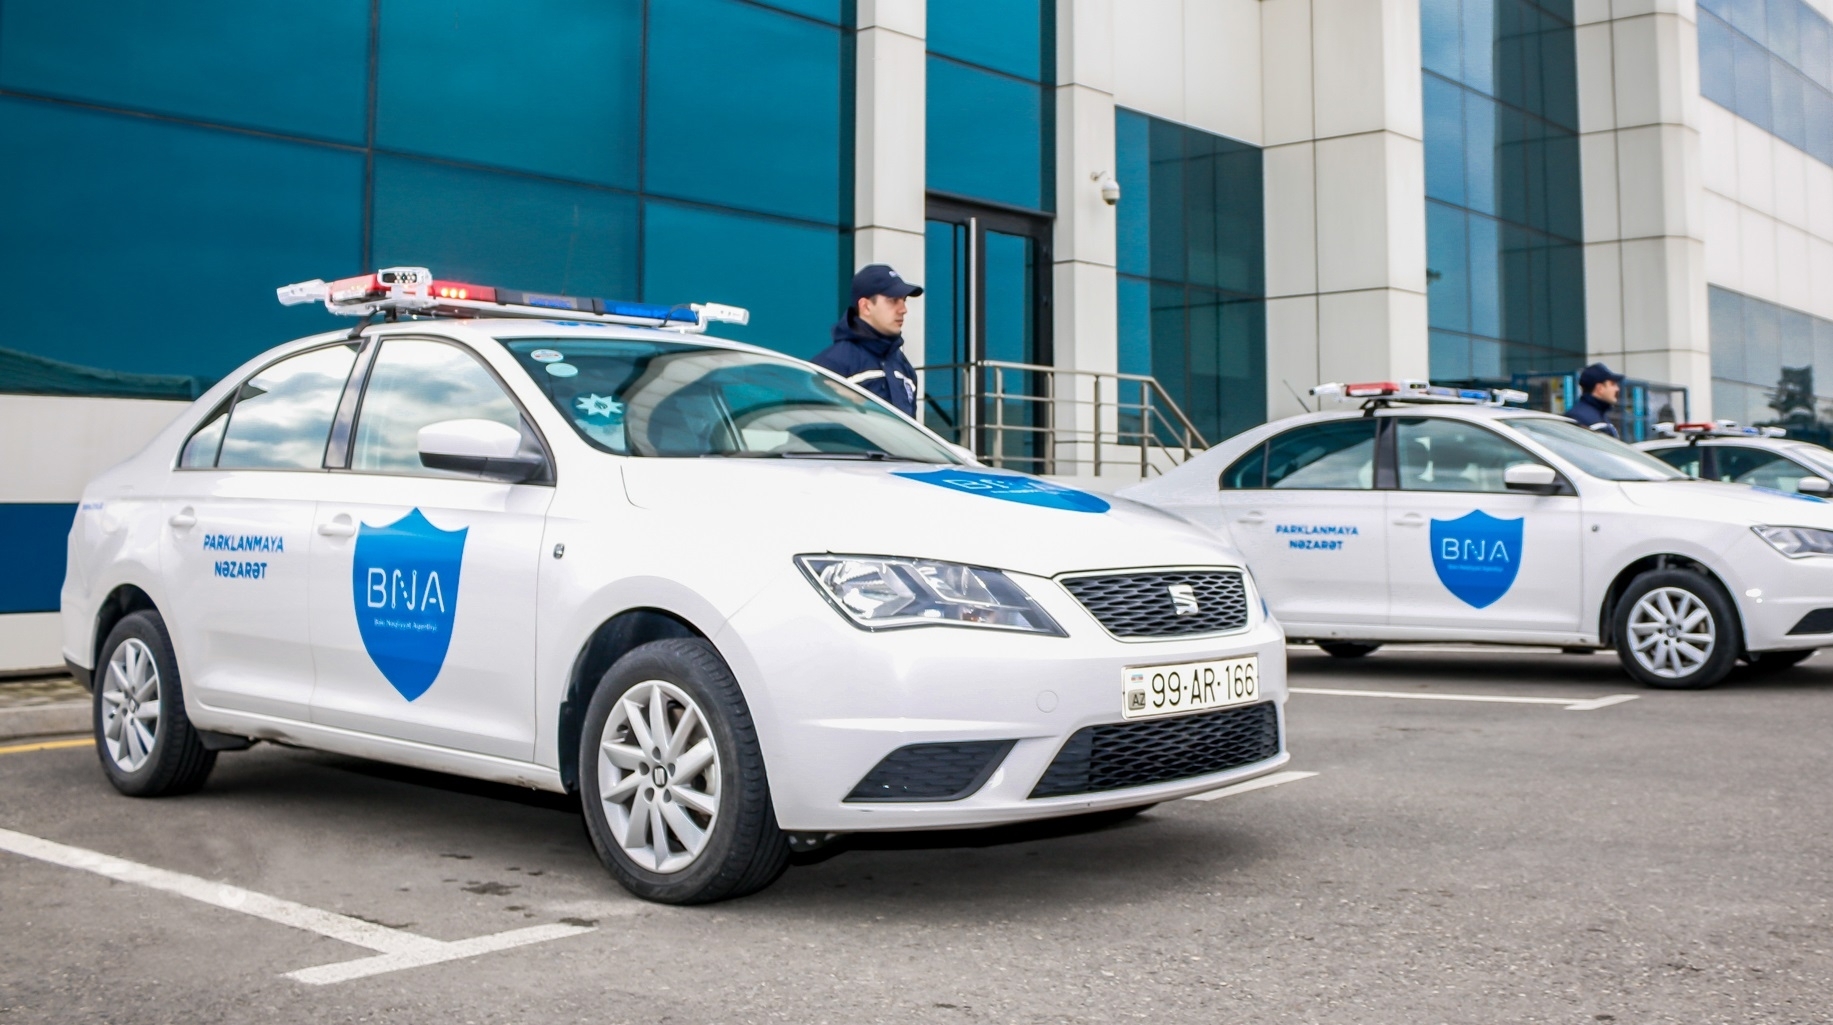 Незаконную парковку в Баку будут контролировать специальные автомобили БТА - ВИДЕО